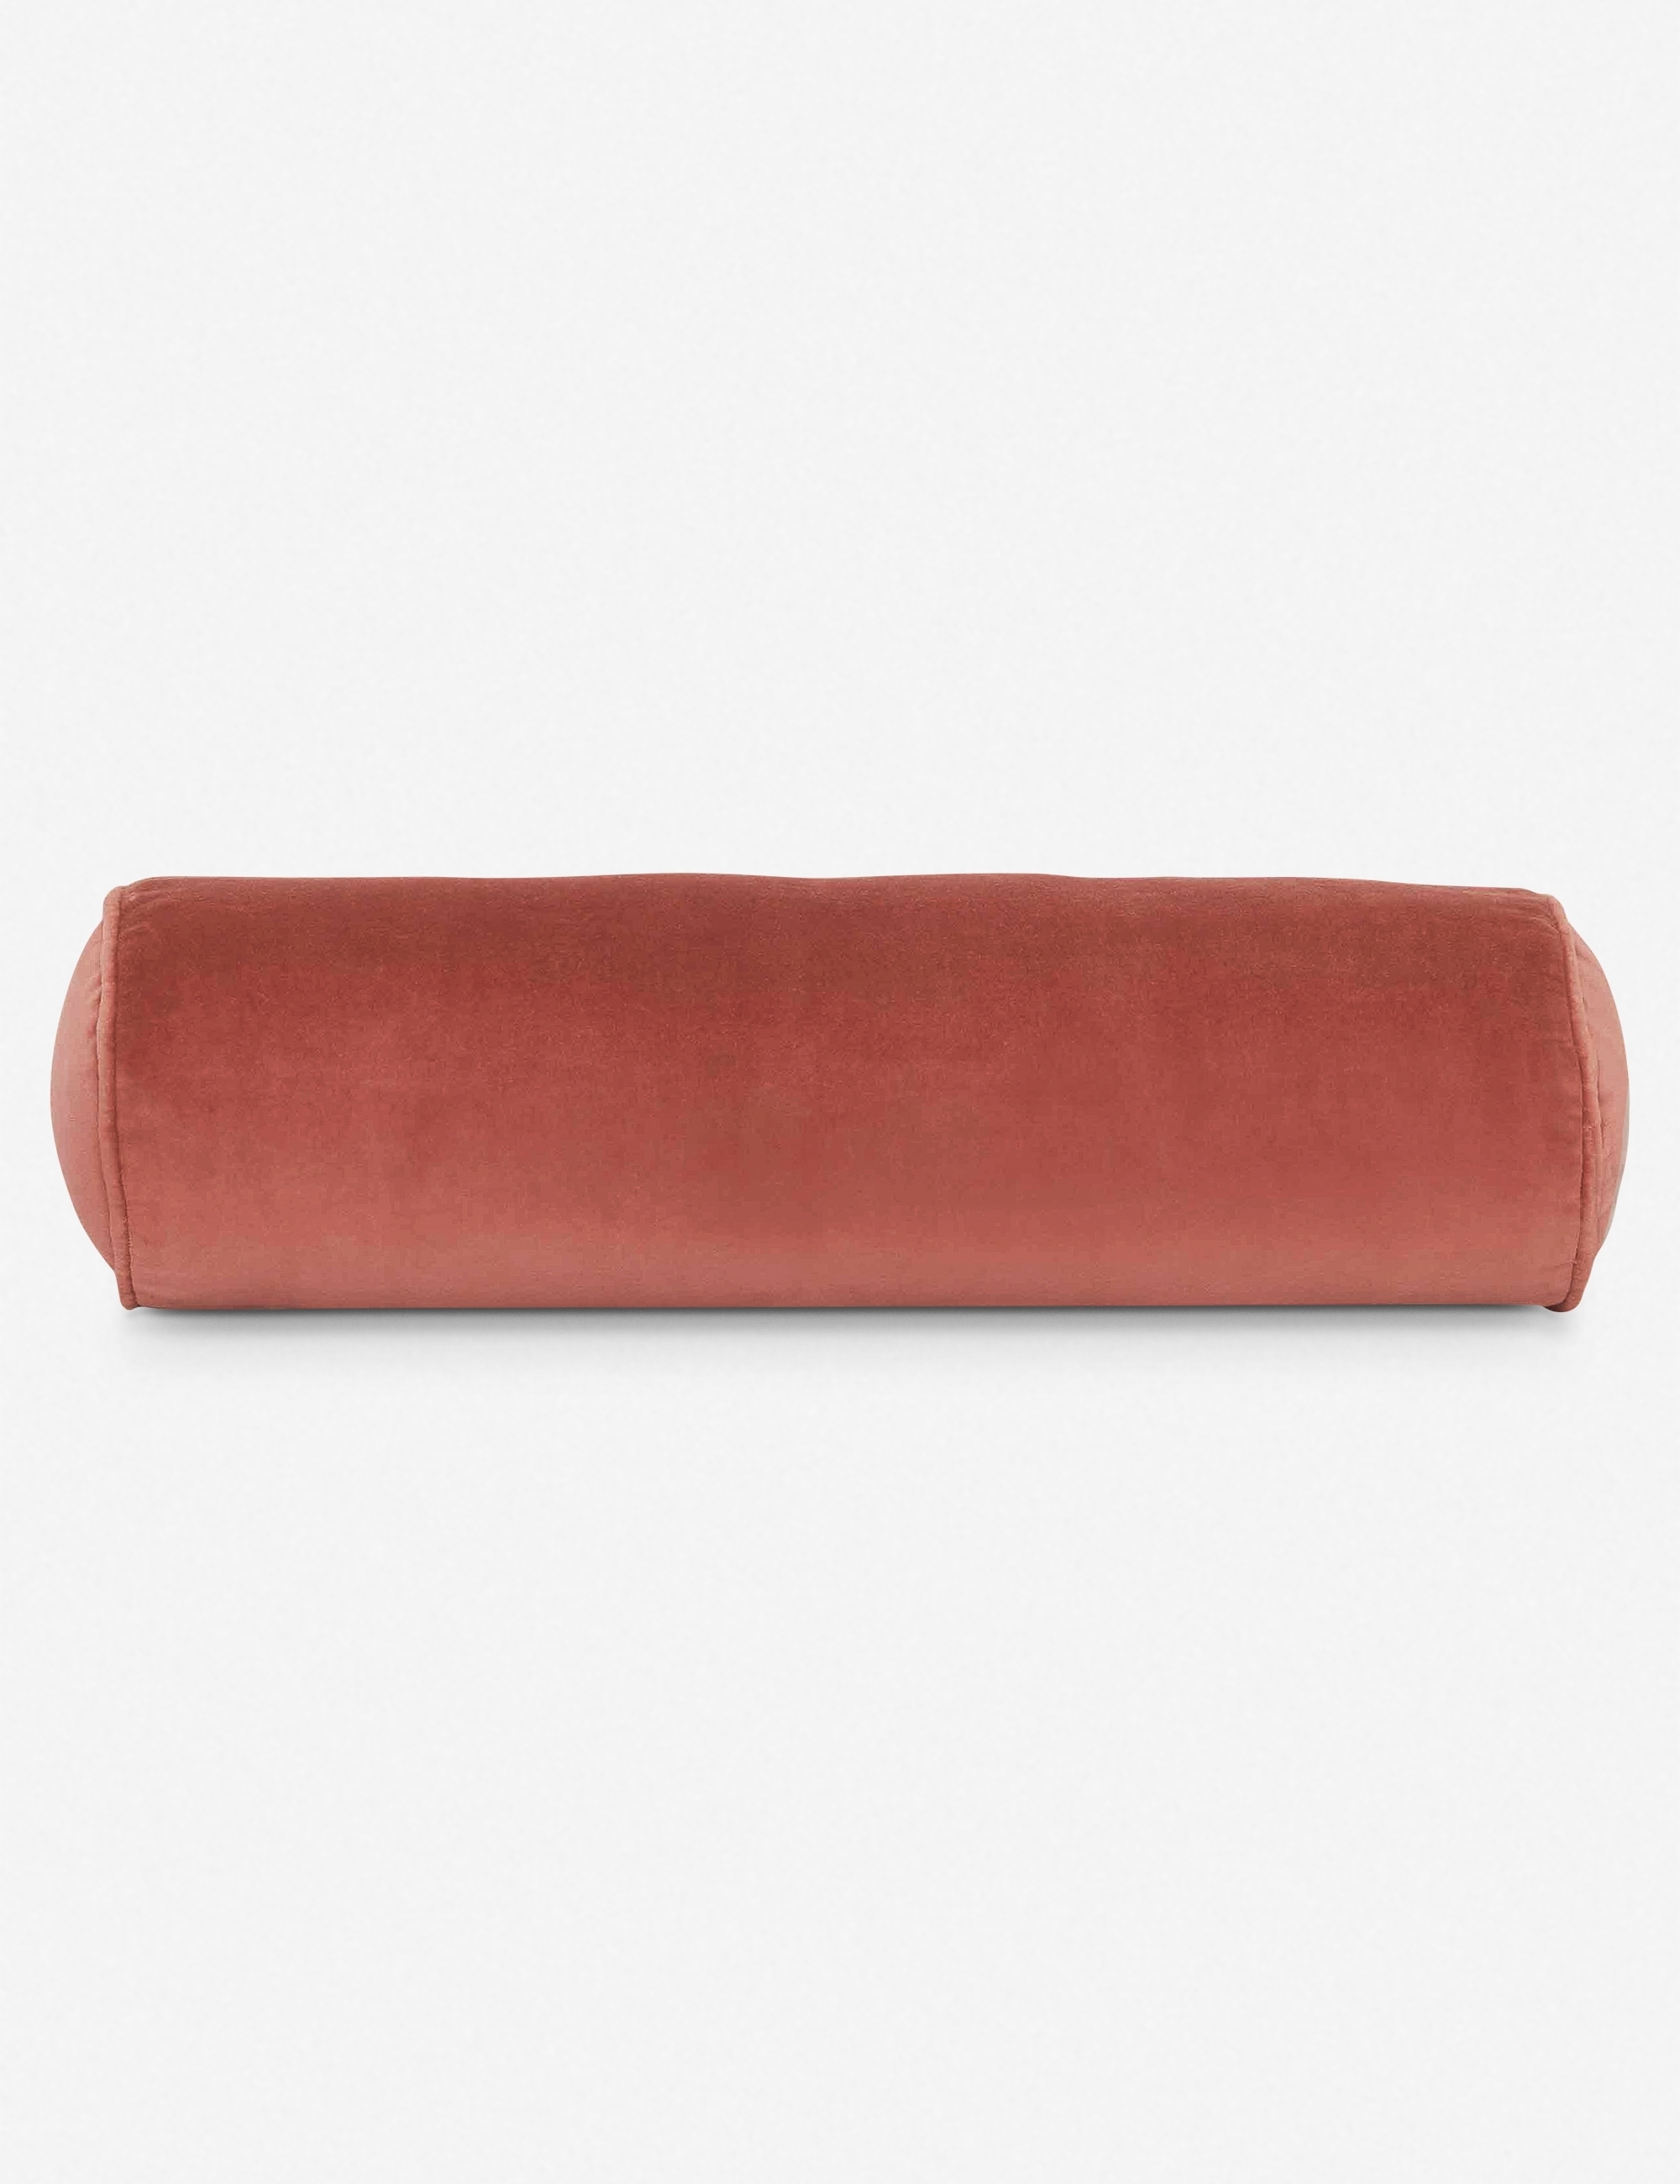 Sabine Velvet Bolster Pillow, Coral - Image 0